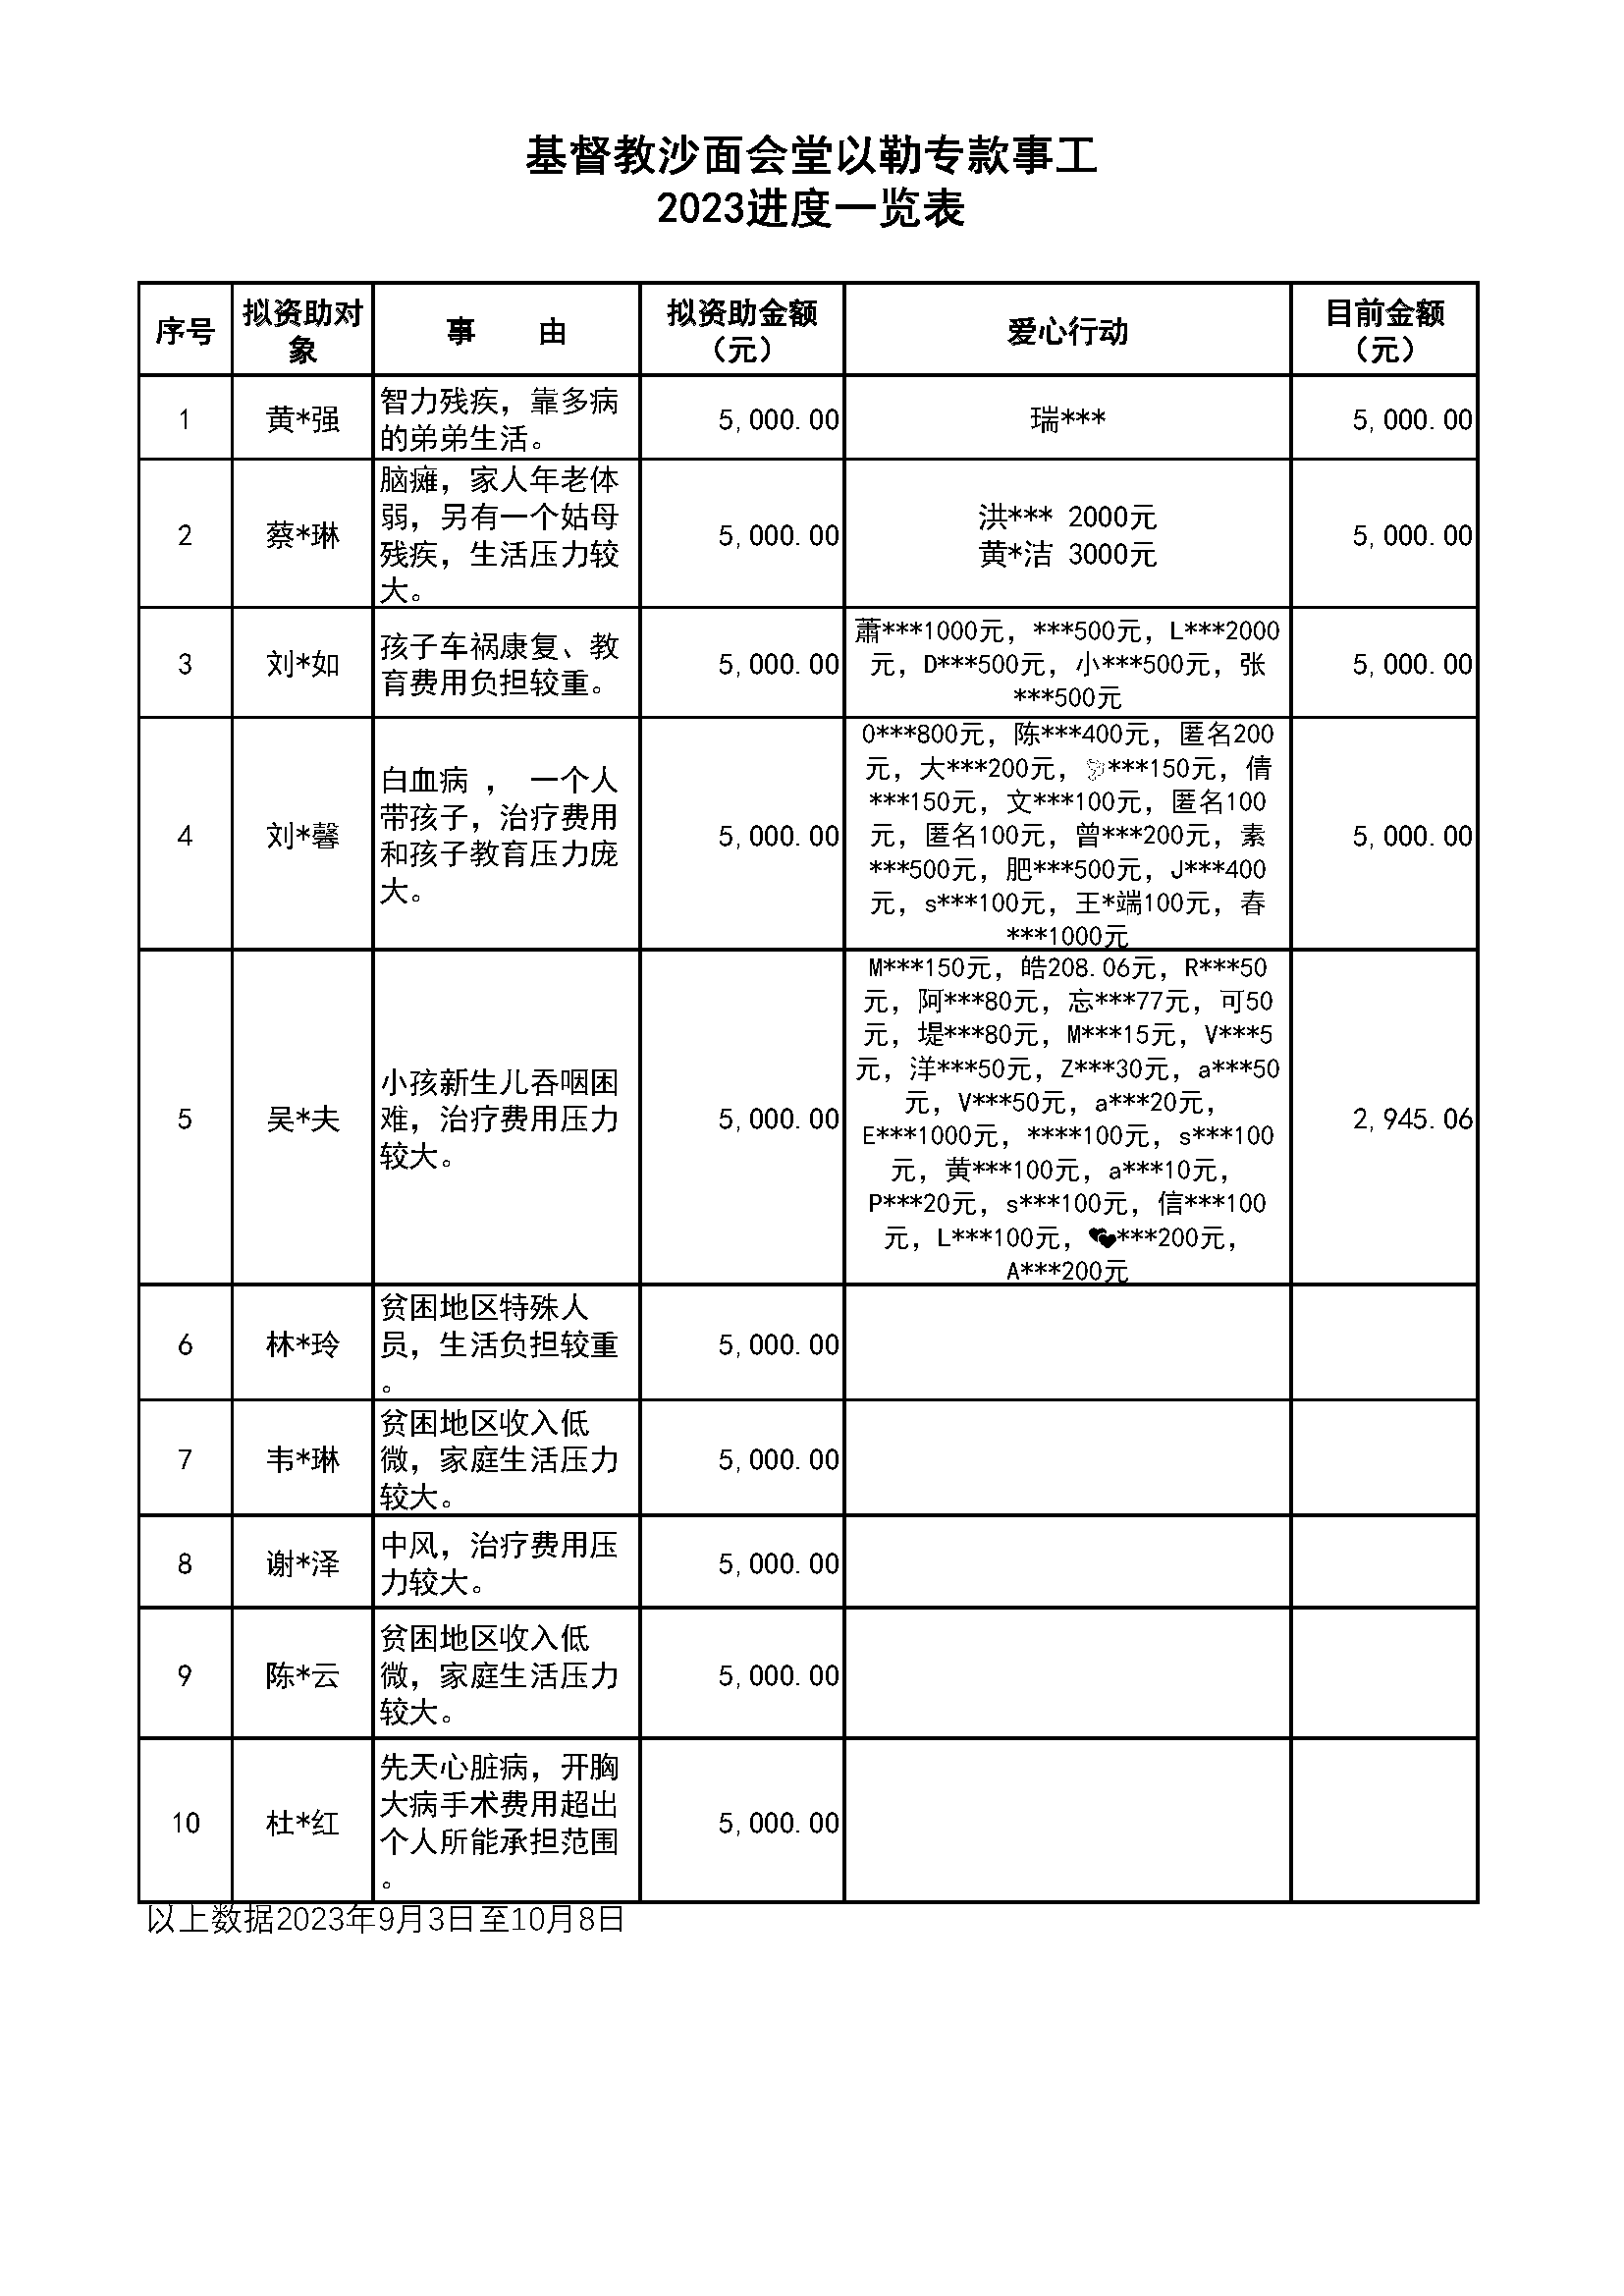 副本以勒专款名单_2023年9月3日-10月8日.png